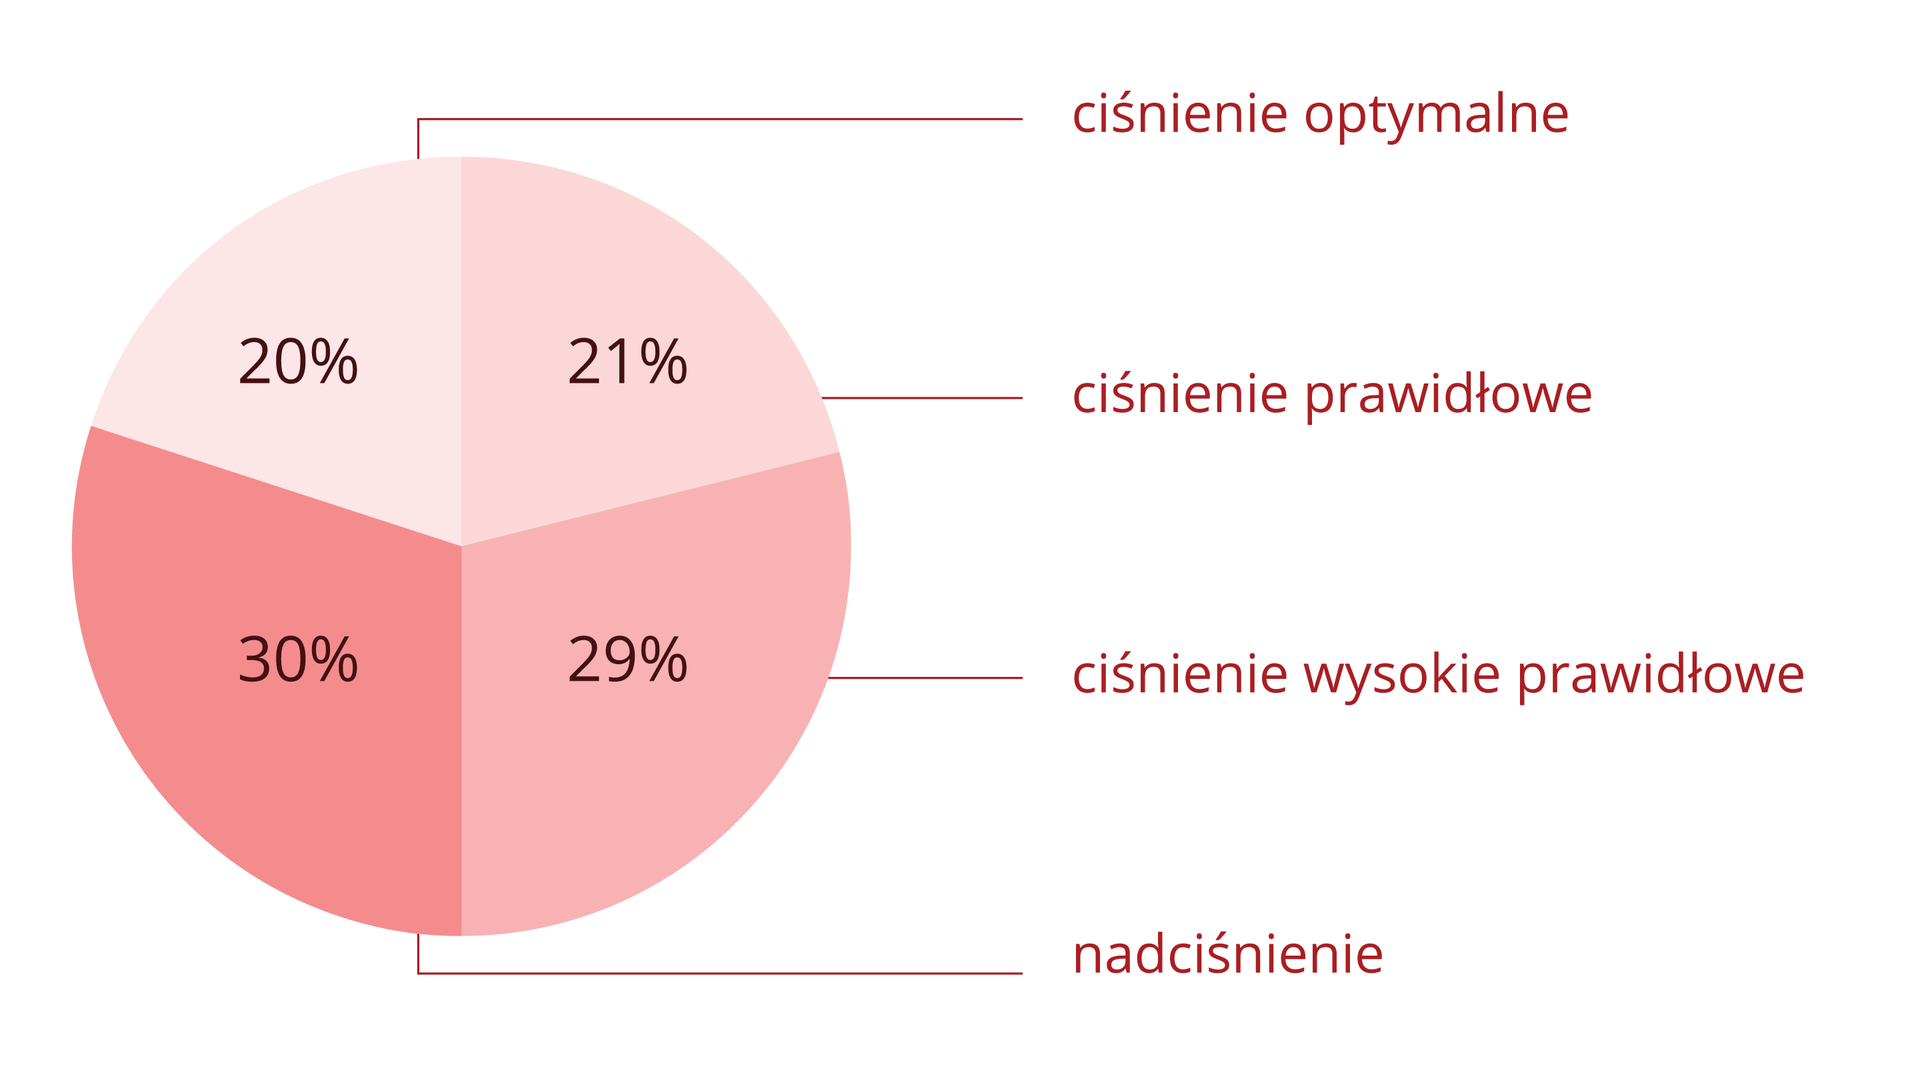 Diagram kołowy w odcieniach różowego przedstawia procent Polaków, którzy mają ciśnienie: optymalne, prawidłowe, wysokie prawidłowe i nadciśnienie.